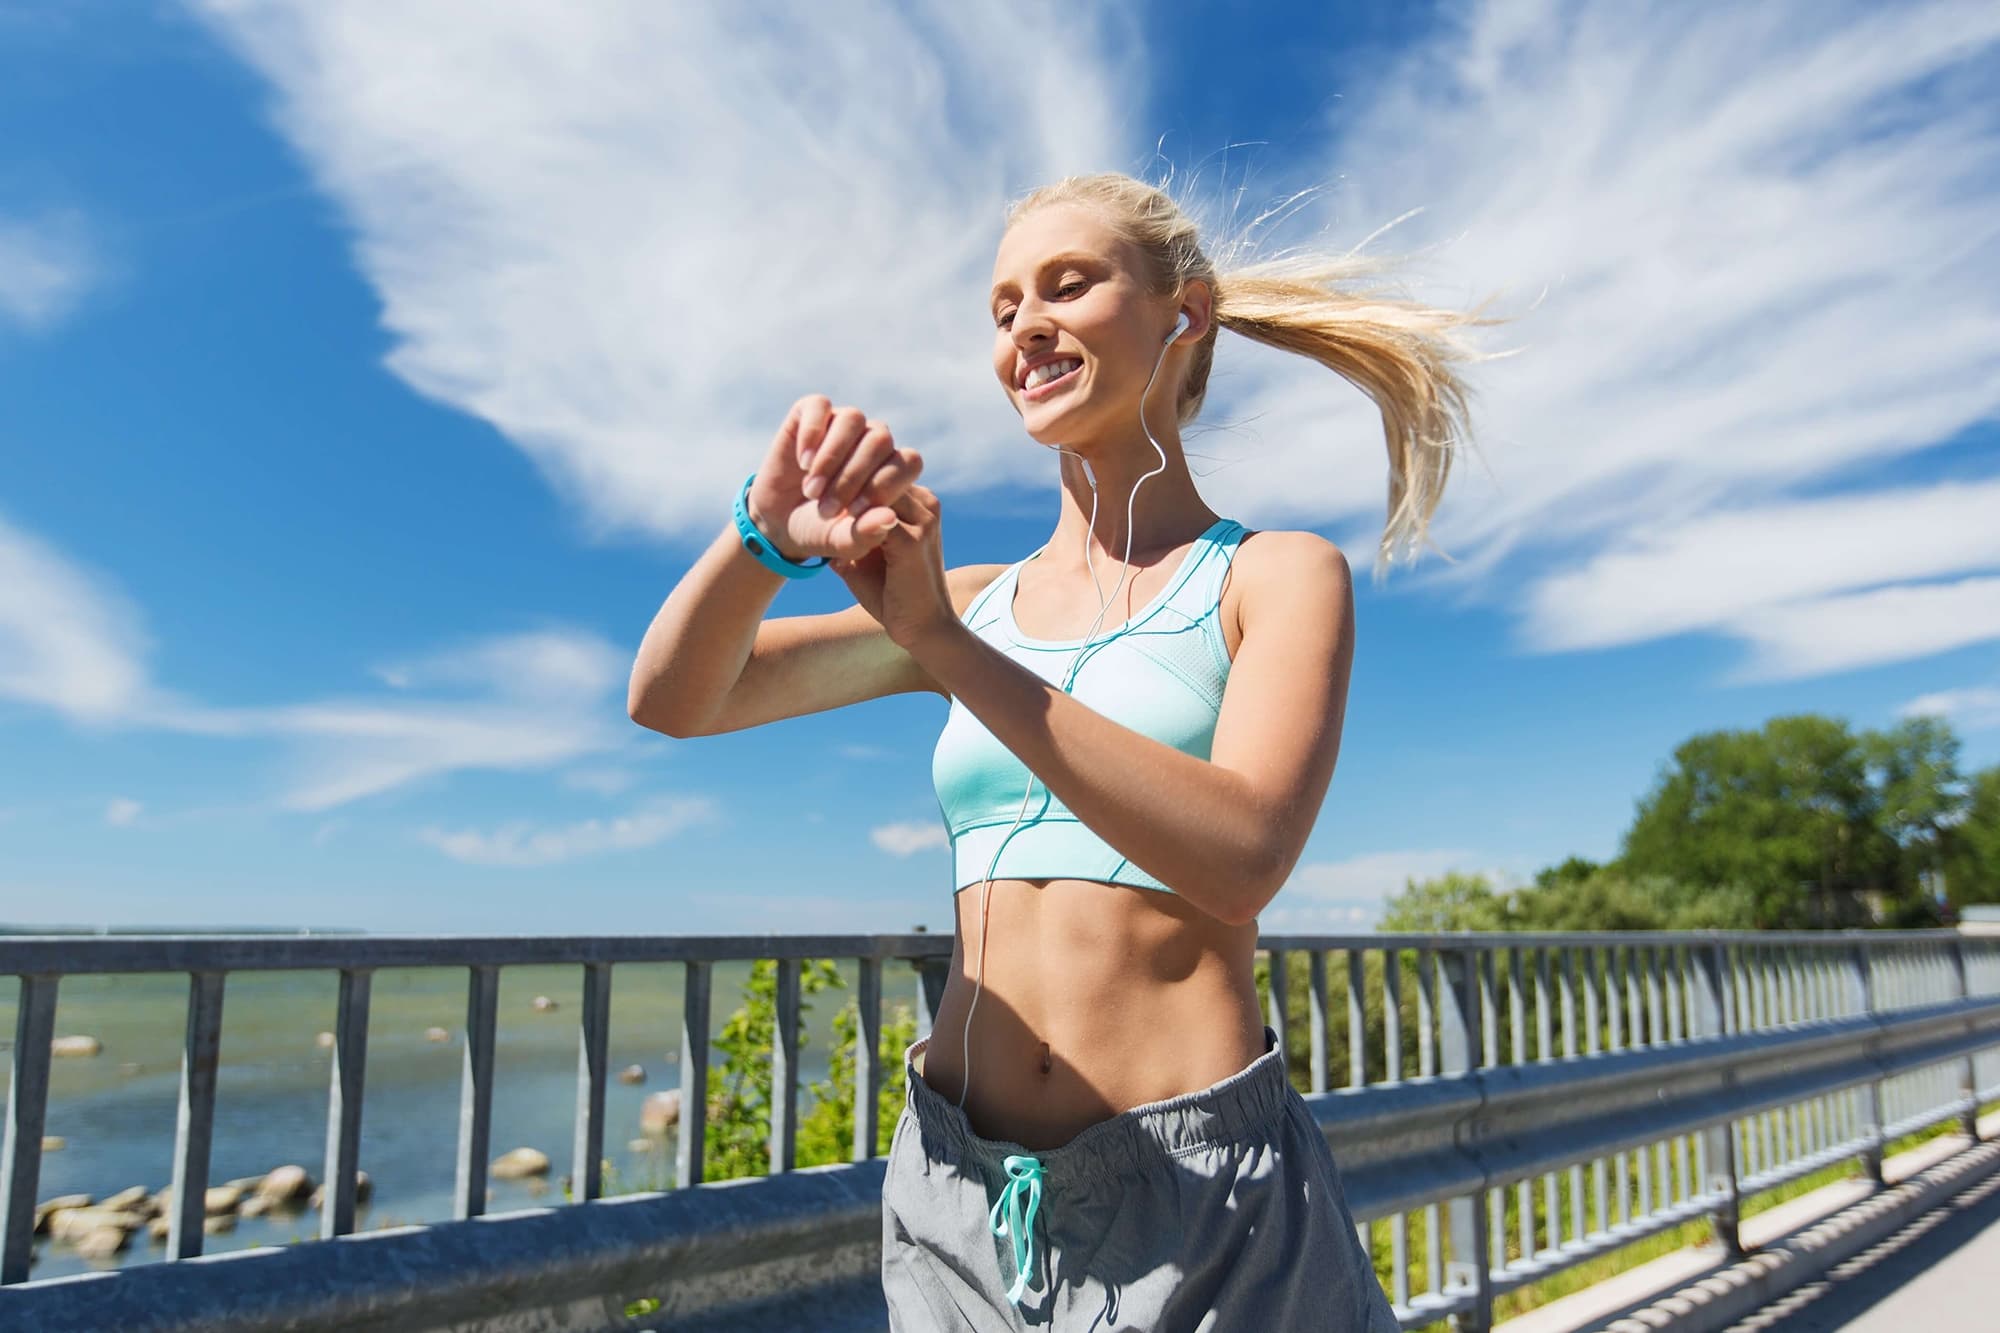 ジョギング 効果的 走り方 三ヶ月 痩せる 方法